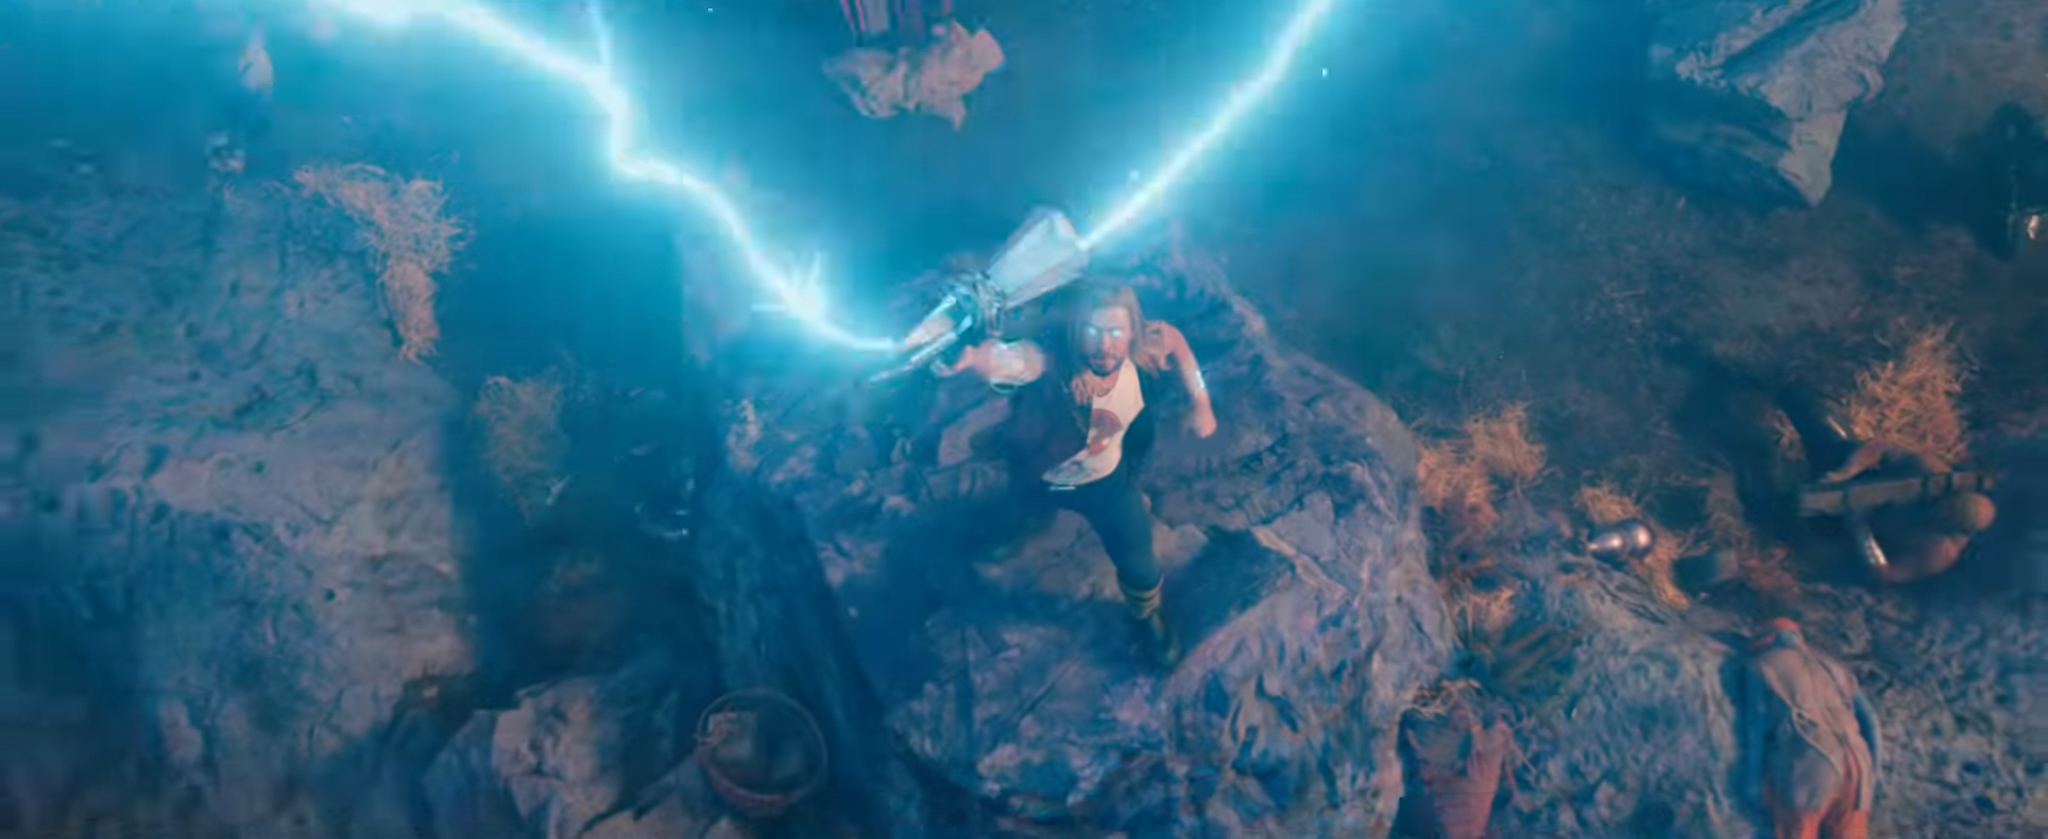 Thor: Love and Thunder tung trailer mới, hé lộ body 6 múi cực phẩm của Thần Sấm, dự kiến khởi chiếu trong tháng